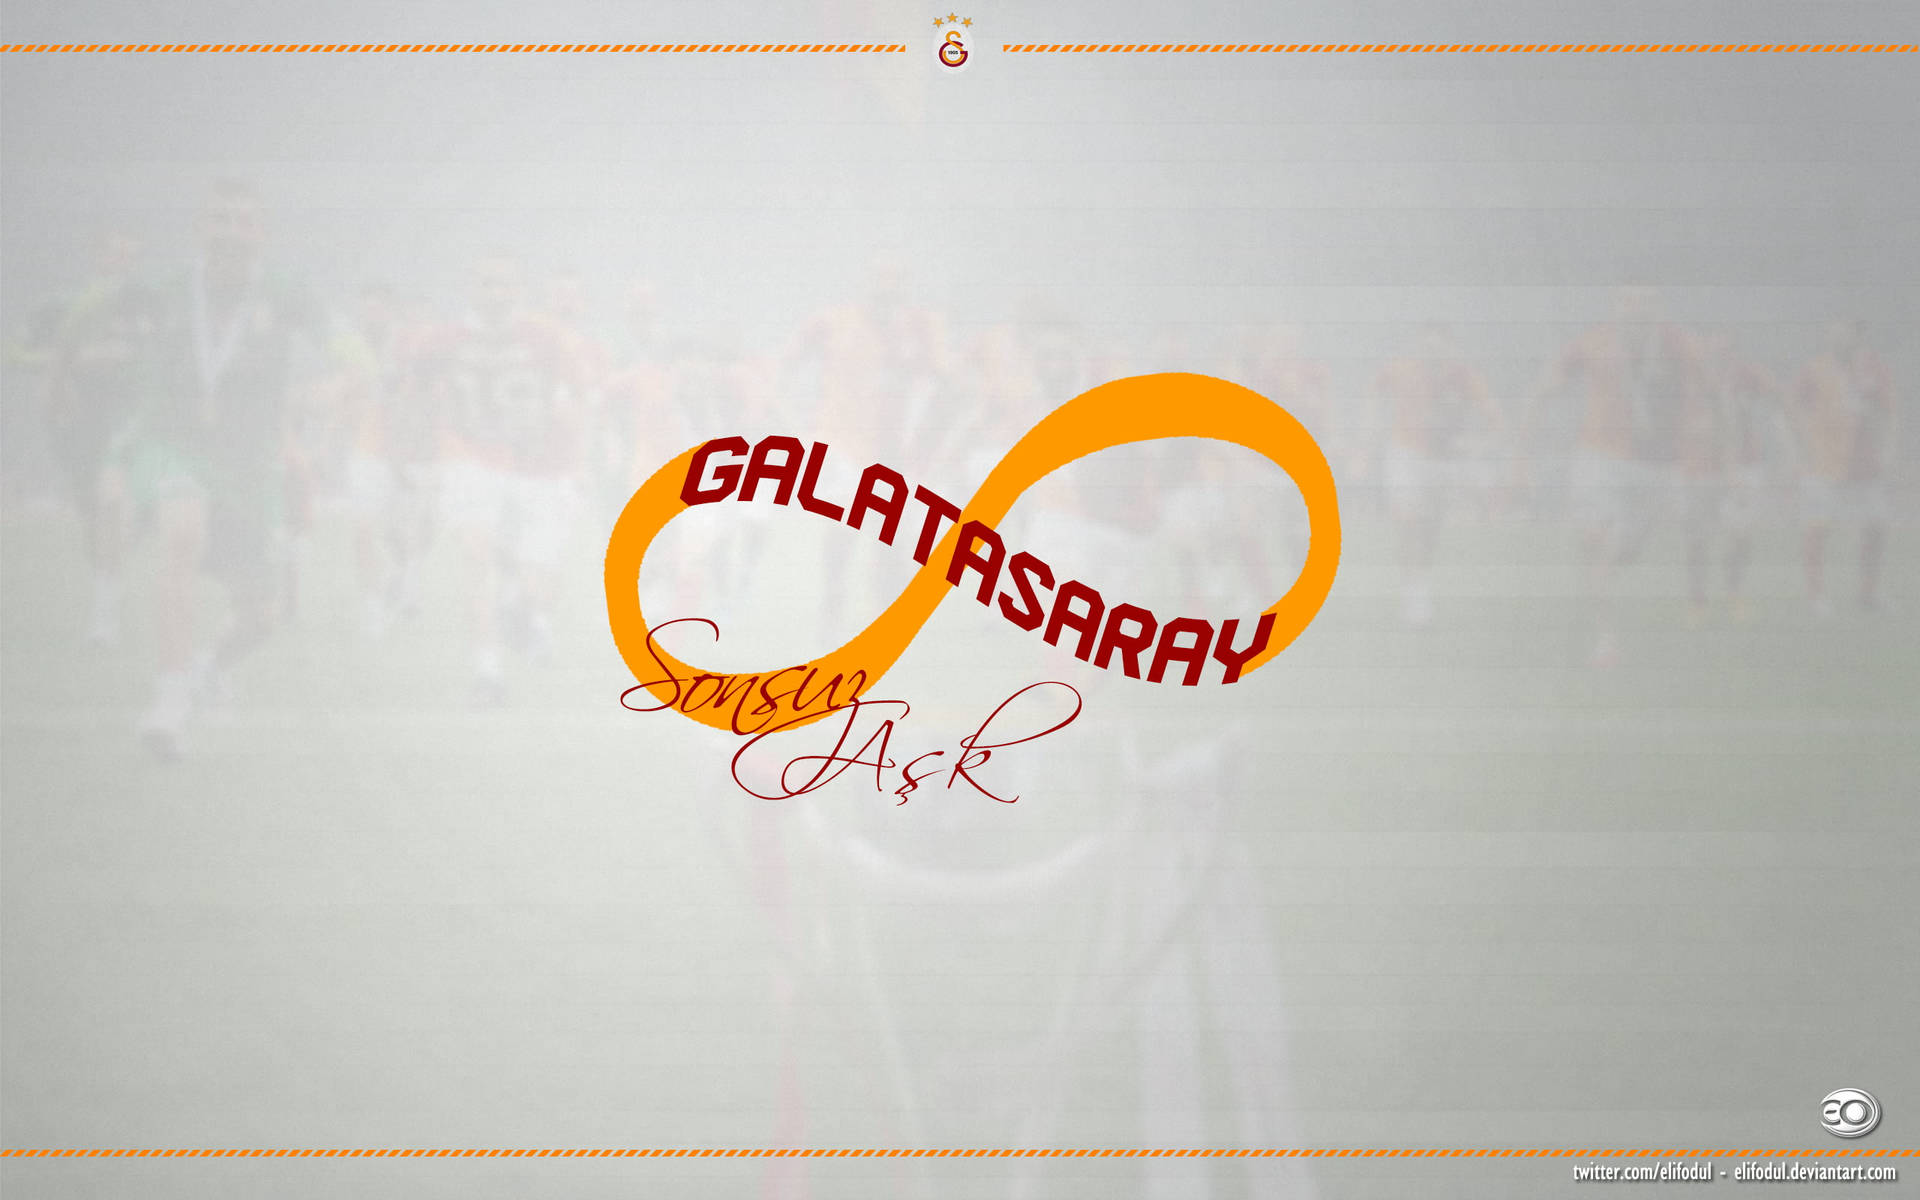 Galatasarayunendlichkeitssymbol Wallpaper